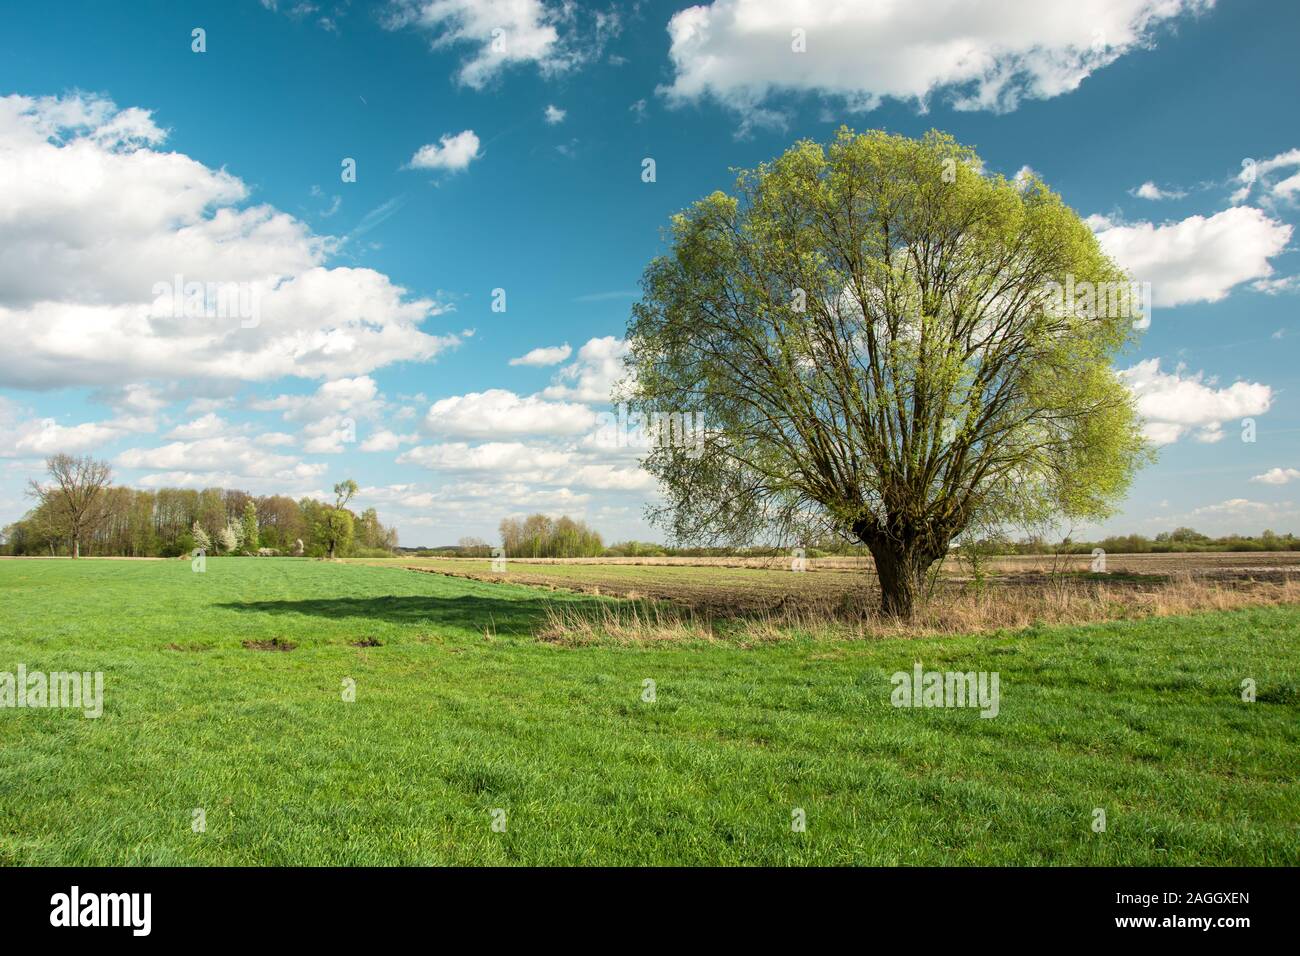 Große Willow Tree Im Feld und weißen Wolken am blauen Himmel - Frühjahr anzeigen Stockfoto